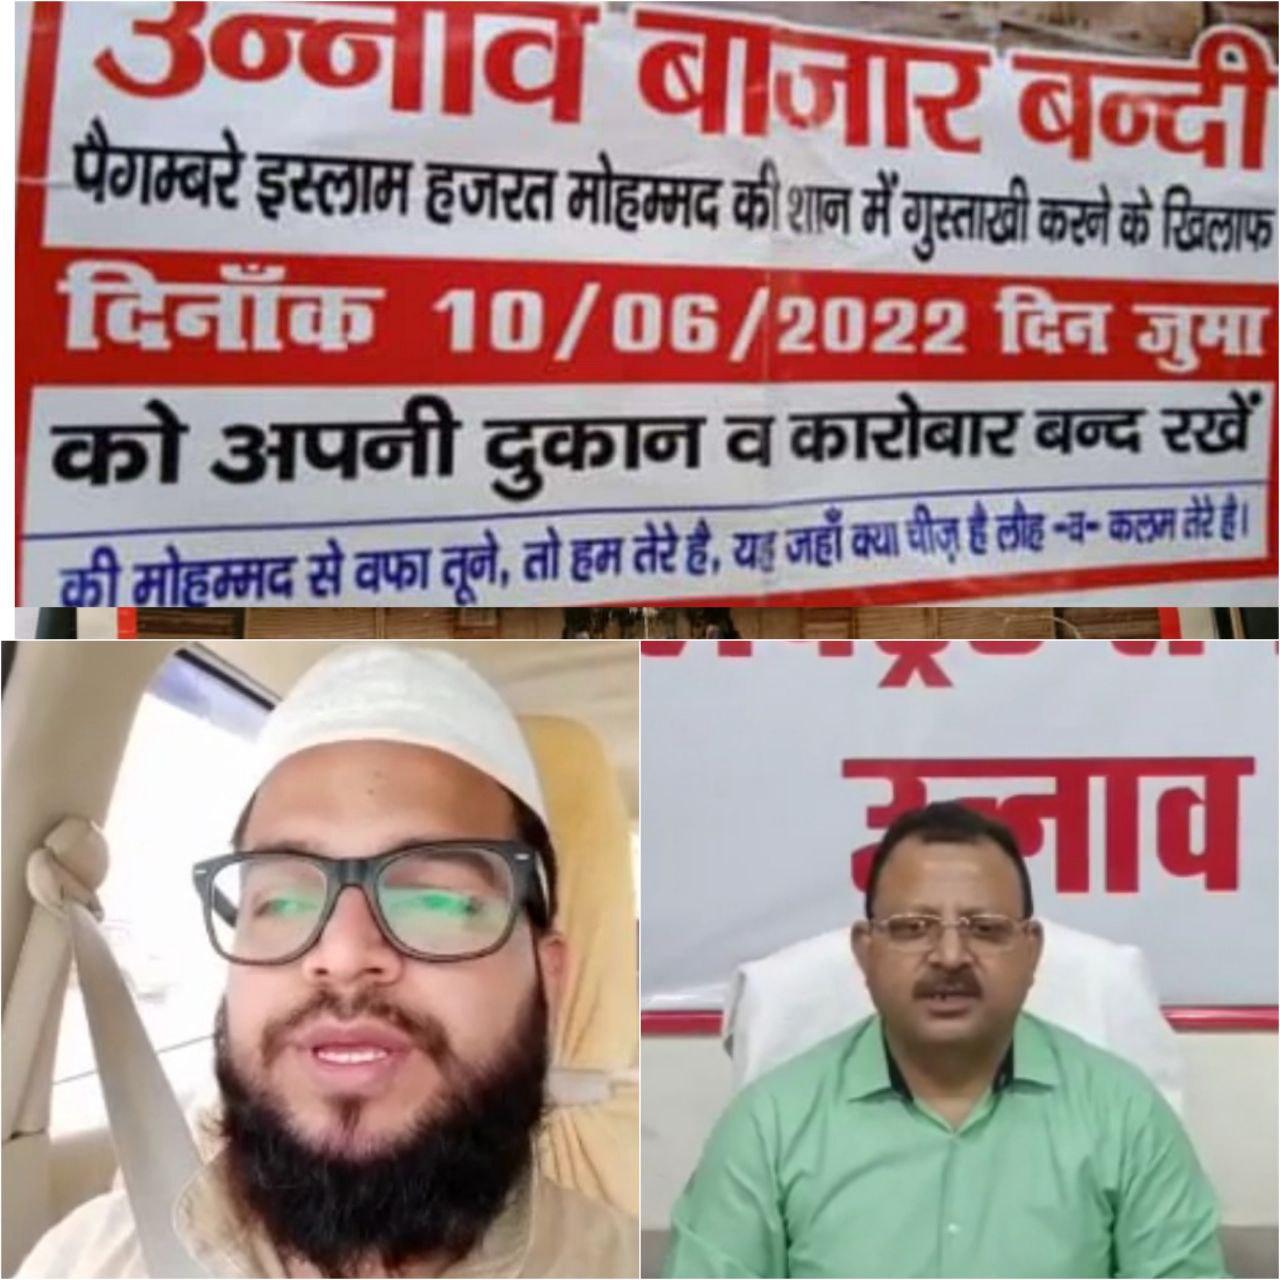 कानपुर के पड़ोसी जिले में बंदी का पोस्टर से मुस्लिम धर्मगुरुओं ने किया इनकार, डीएम ने कहा प्रशासन की व्यवस्था बता दी गई